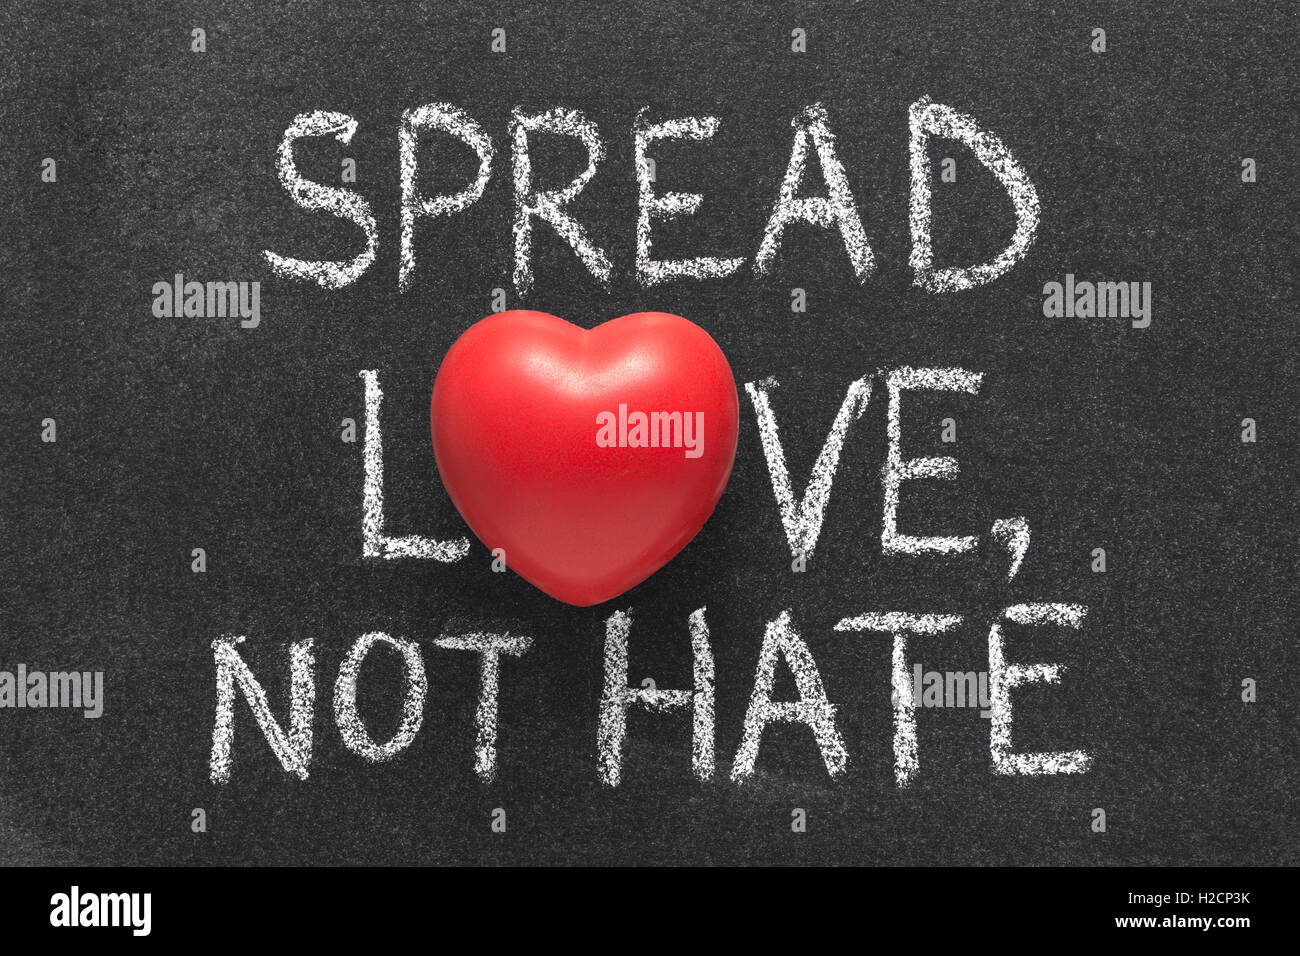 Liebe zu verbreiten, nicht hasse Ausdruck handschriftlich auf Tafel mit Herzsymbol statt O Stockfoto